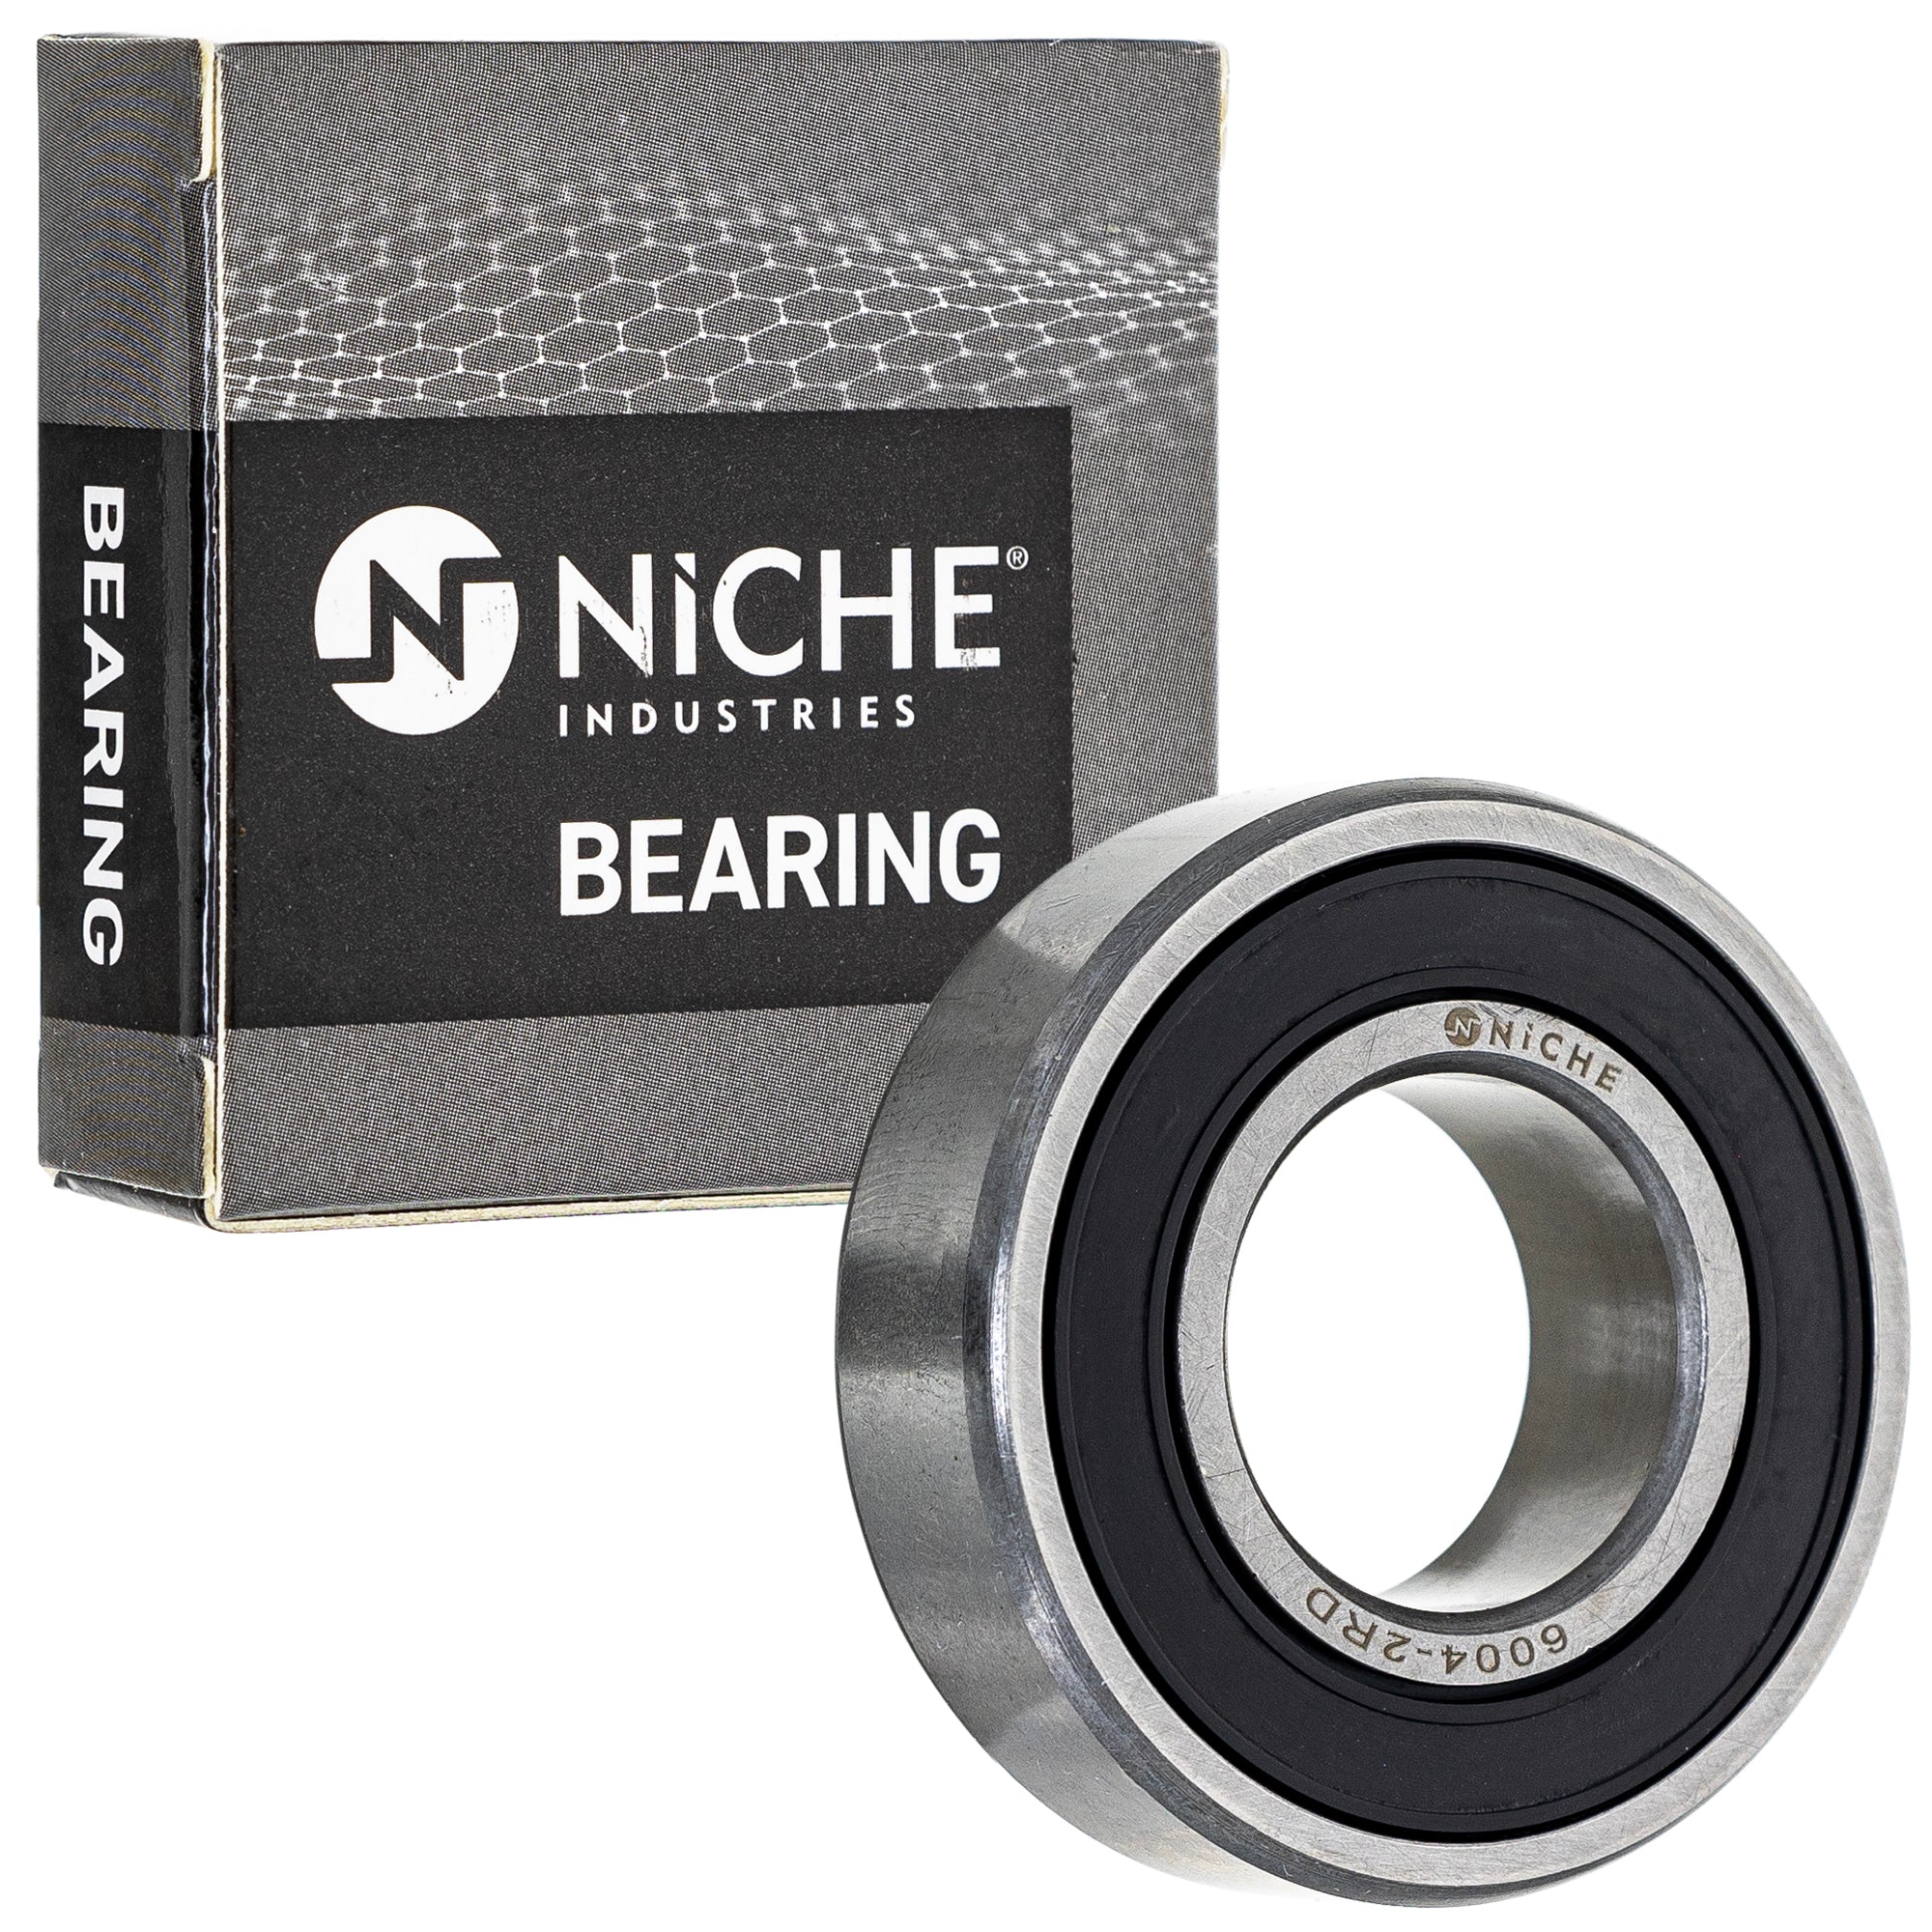 NICHE 519-CBB2230R Bearing 10-Pack for zOTHER TTR110E TT600 TRX300X